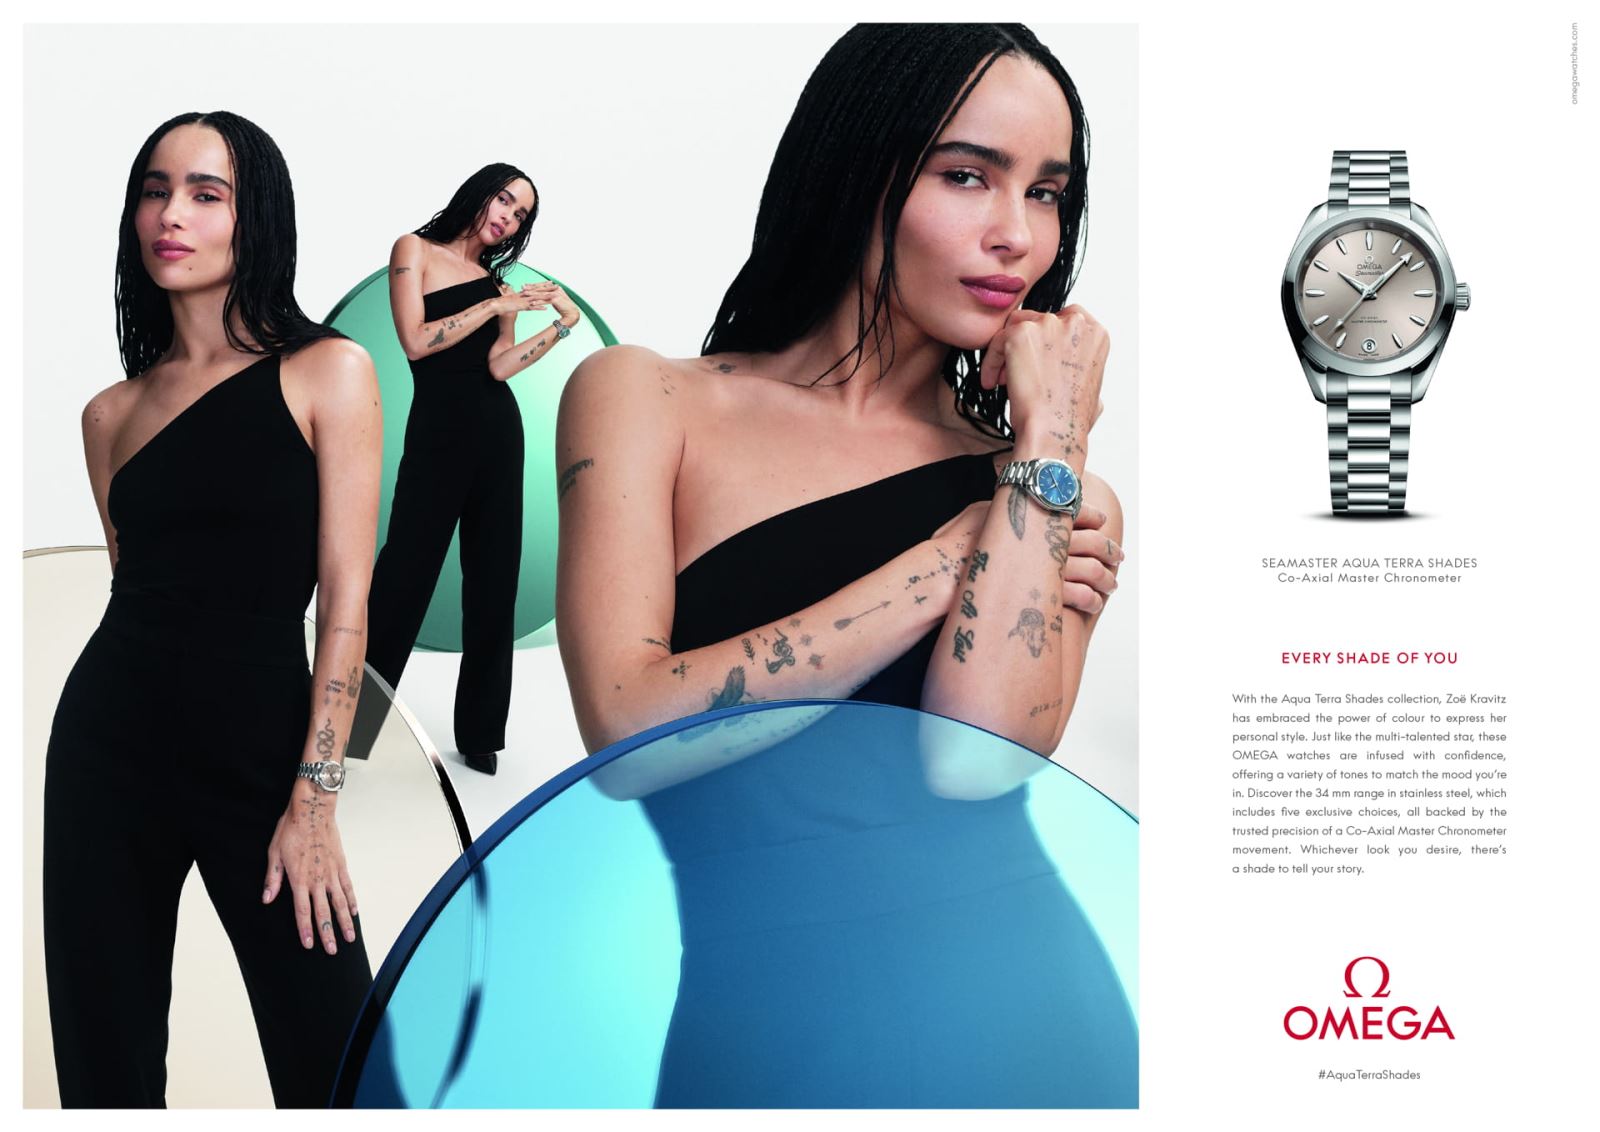 OMEGA ra mắt chiến dịch Aqua Terra Shades cùng các đại sứ thương hiệu Zoë Kravitz, Châu Đông Vũ và Eddie Redmayne